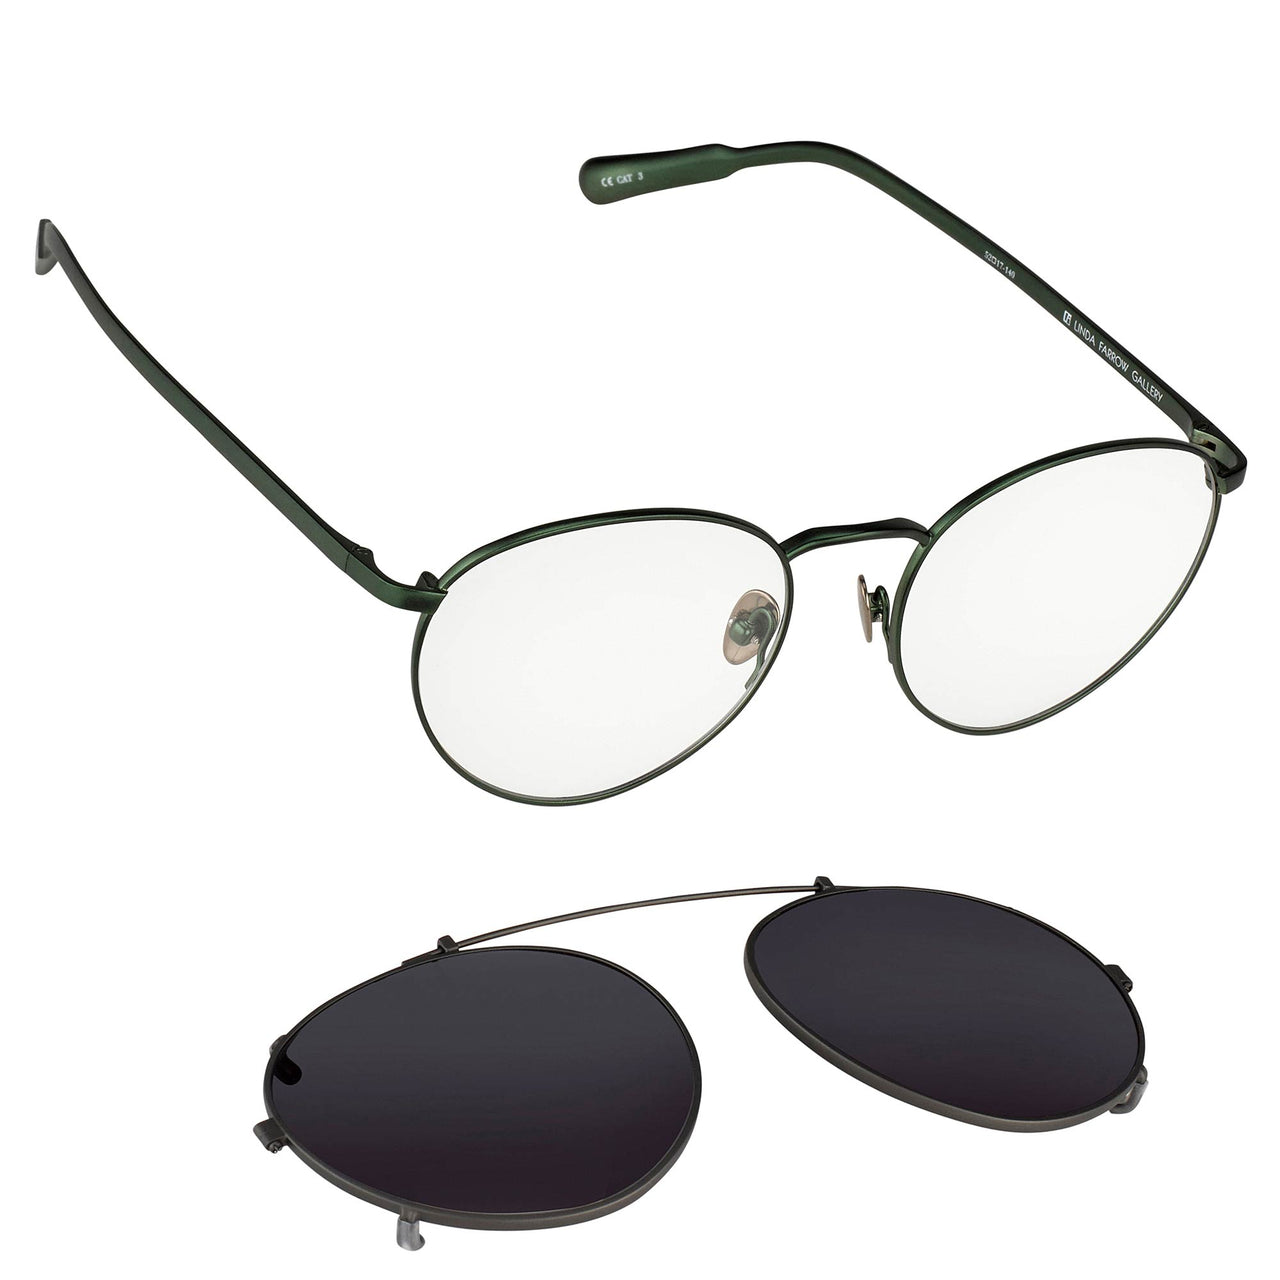 Kris Van Assche Sunglasses Oval Green and Gunmetal Grey - Watches & Crystals